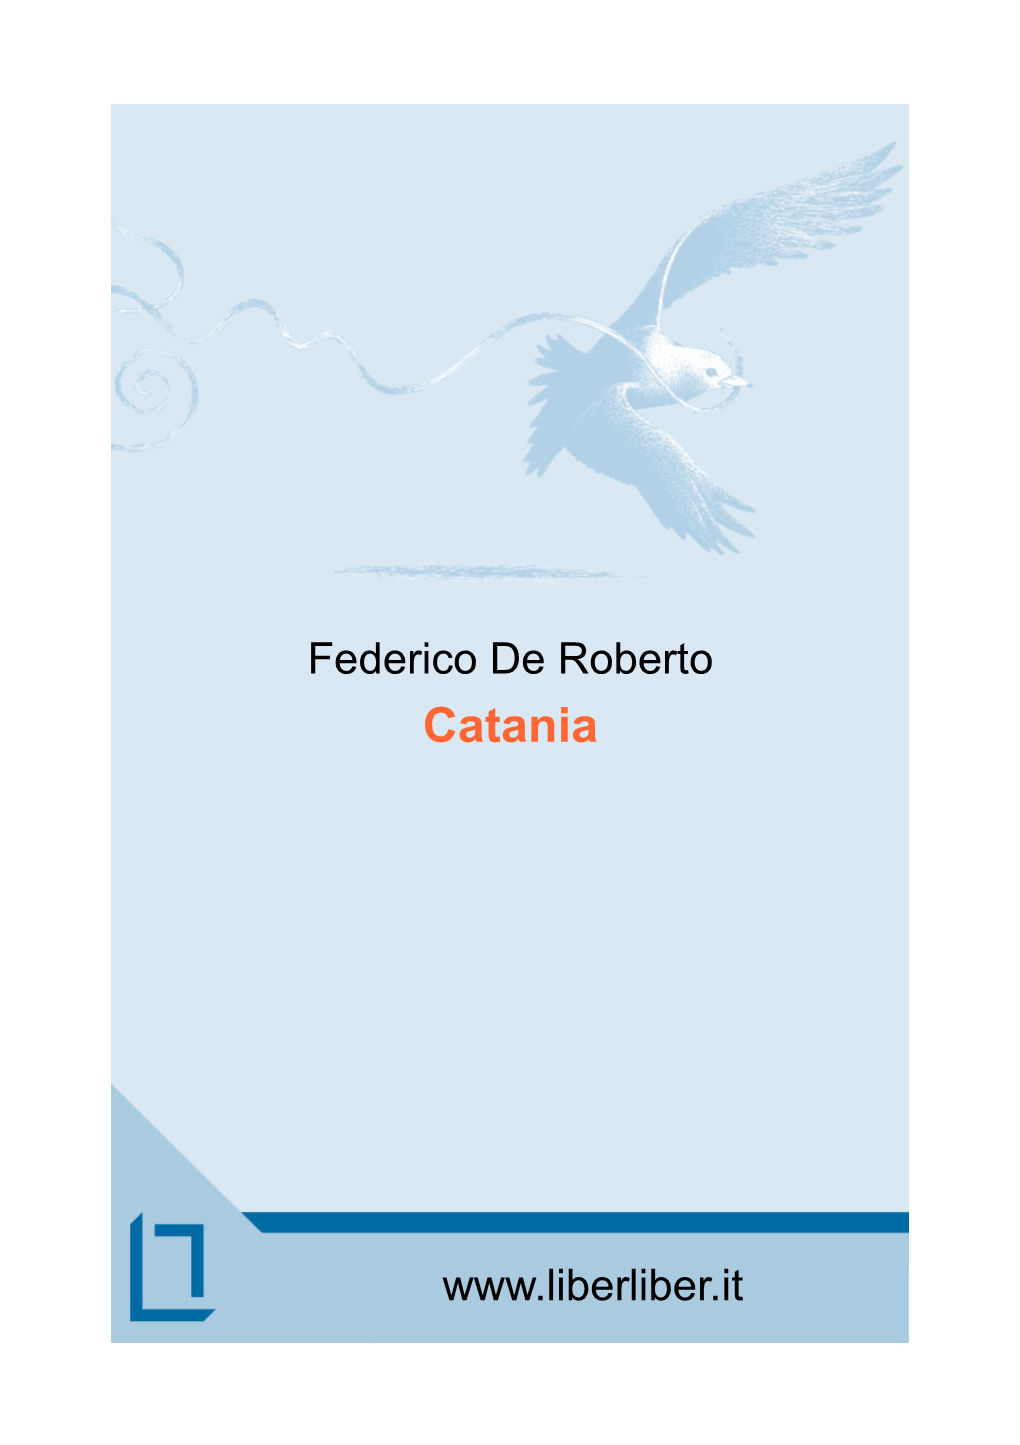 Federico De Roberto Catania